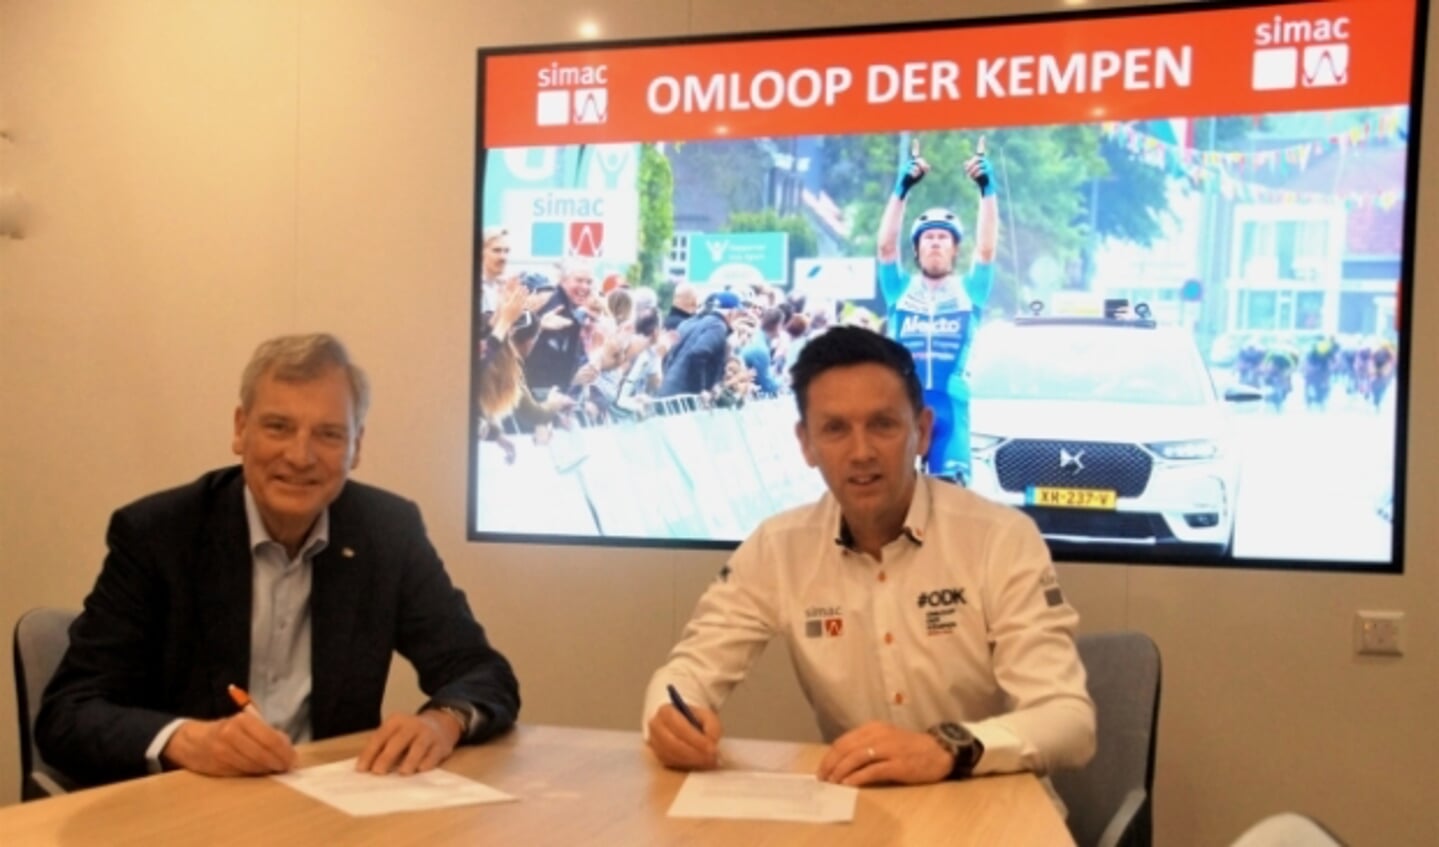 De contractondertekening van de samenwerking tussen Simac en de Omloop der Kempen. FOTO: Hans Louwers.